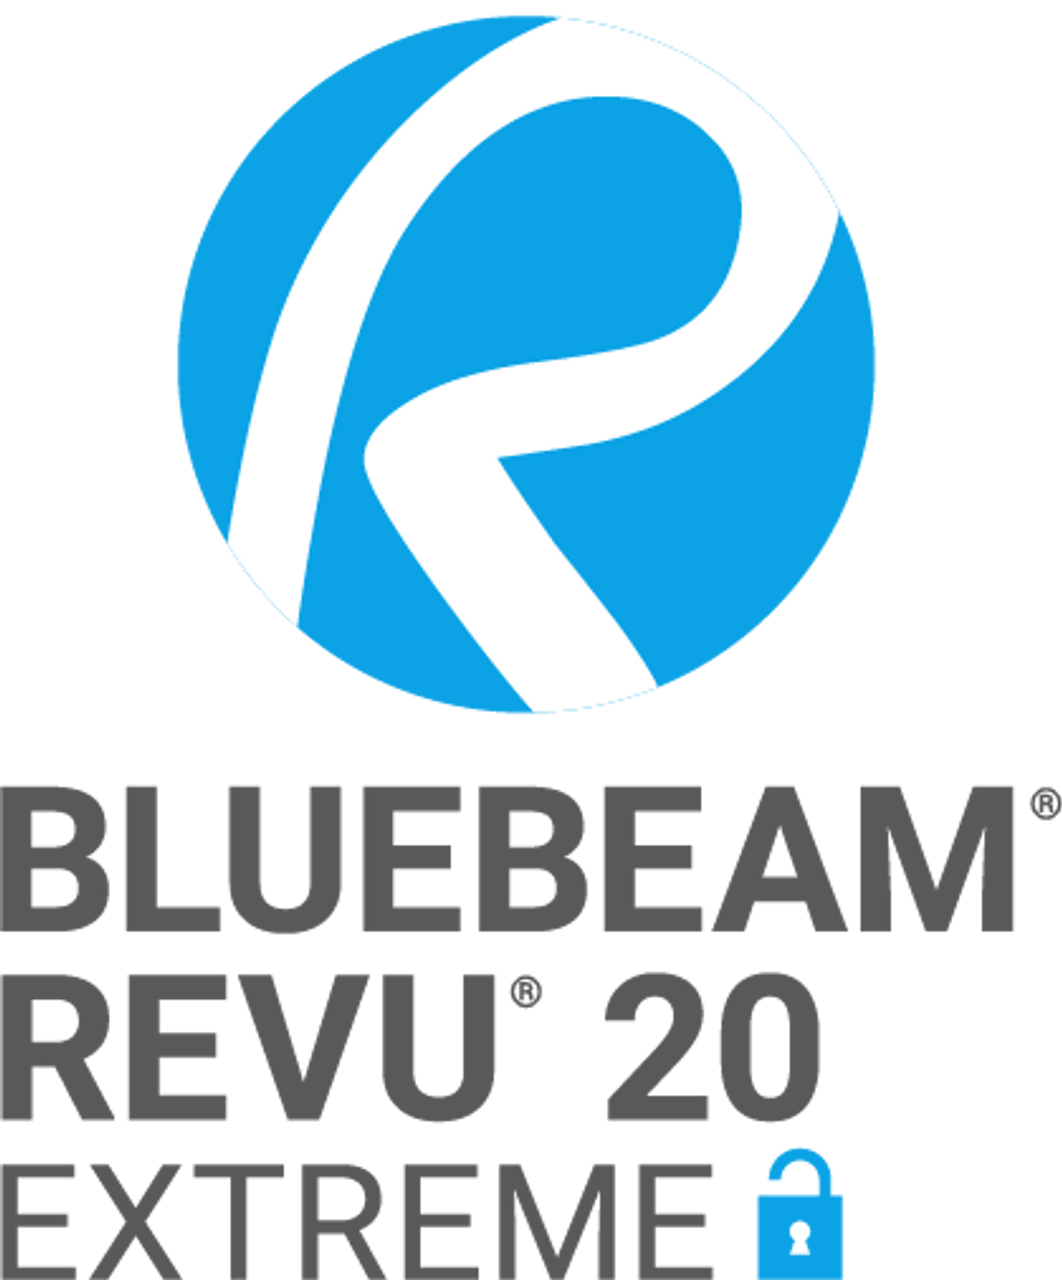 bluebeam revu standard features